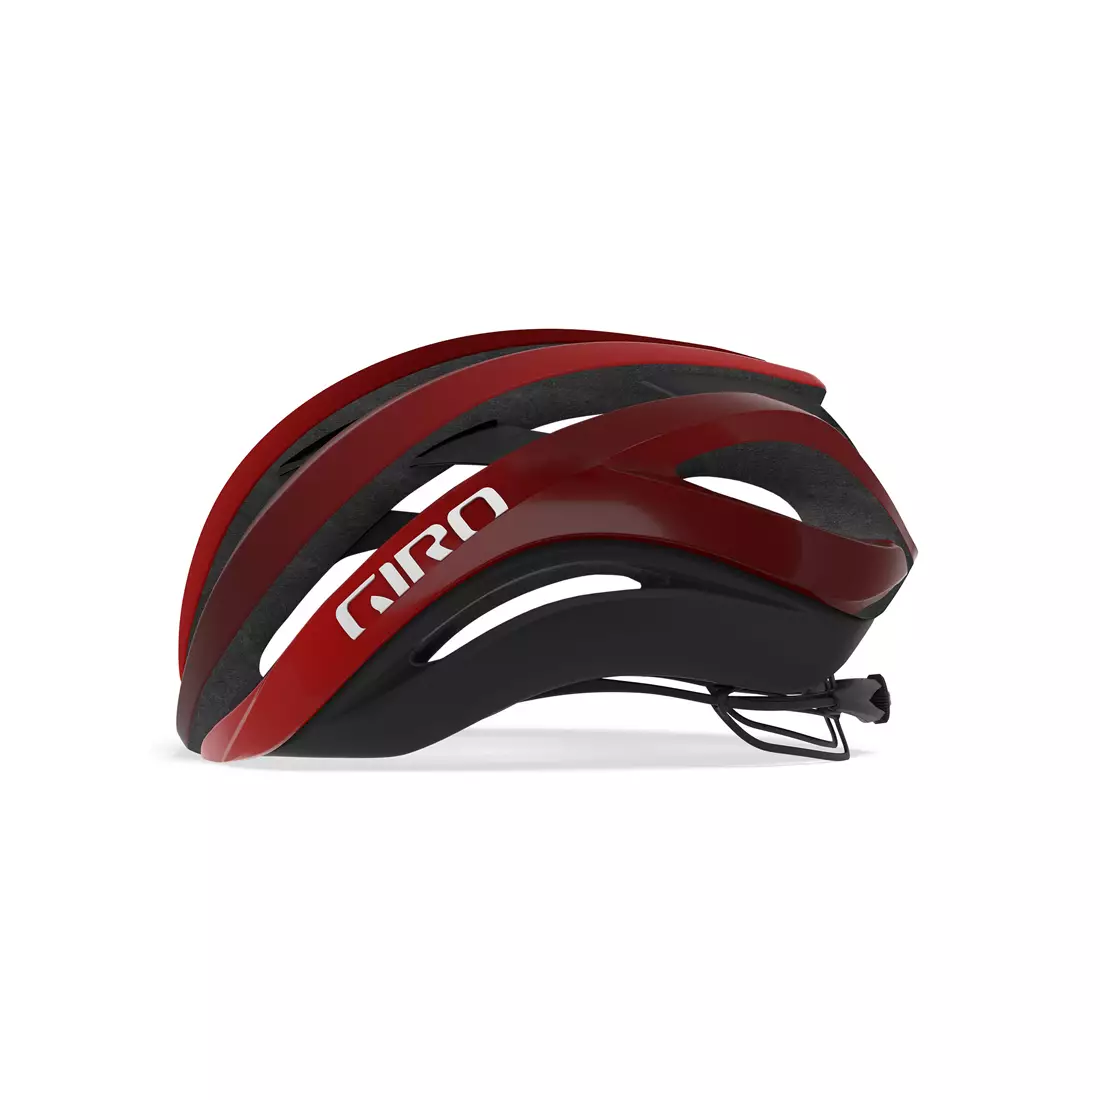 GIRO road bike helmet aether spherical mips matte bright red dark red GR-7099514